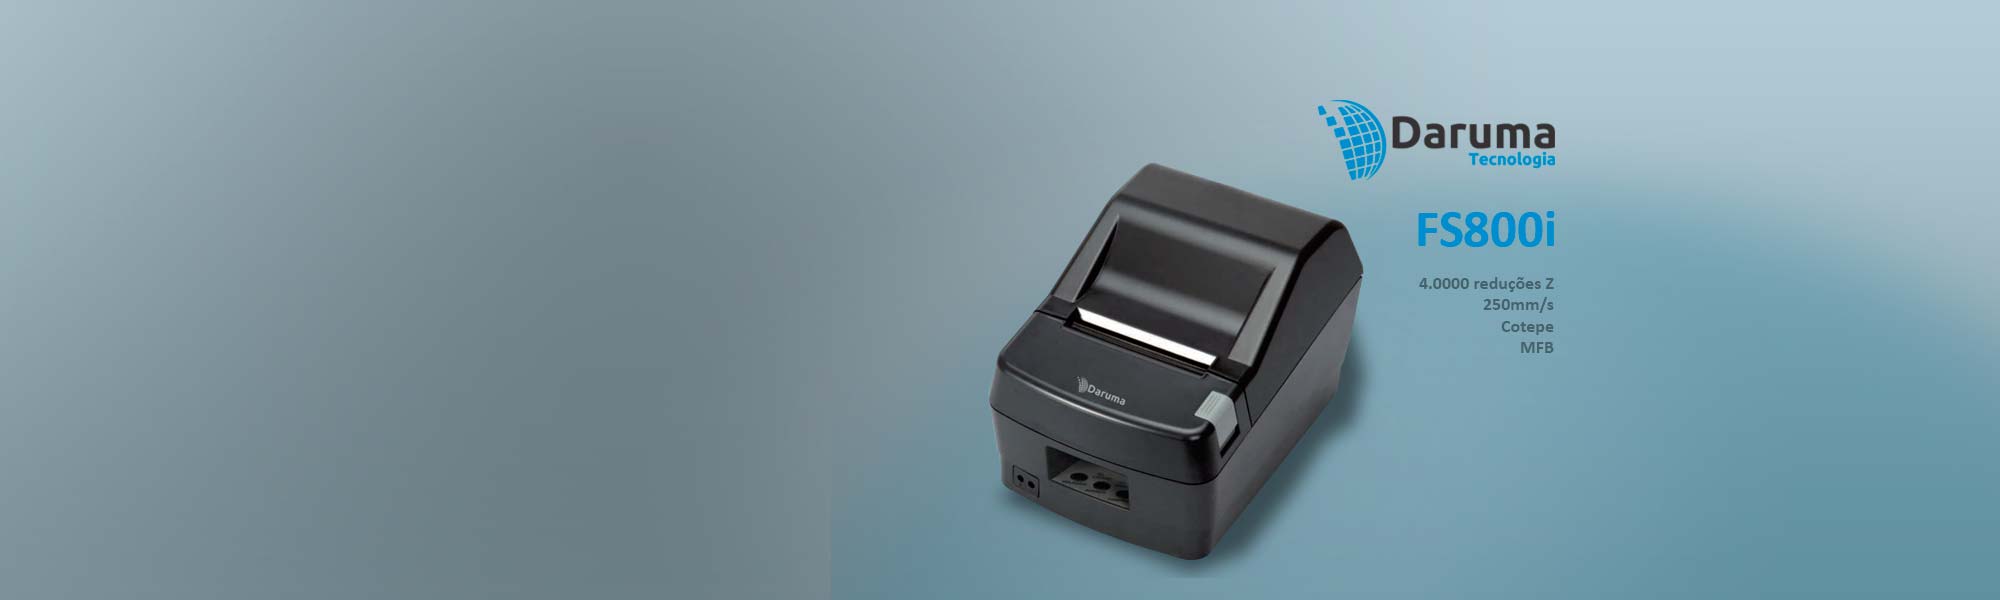 Impressora fiscal Daruma FS800i - Oscom Automação Comercial